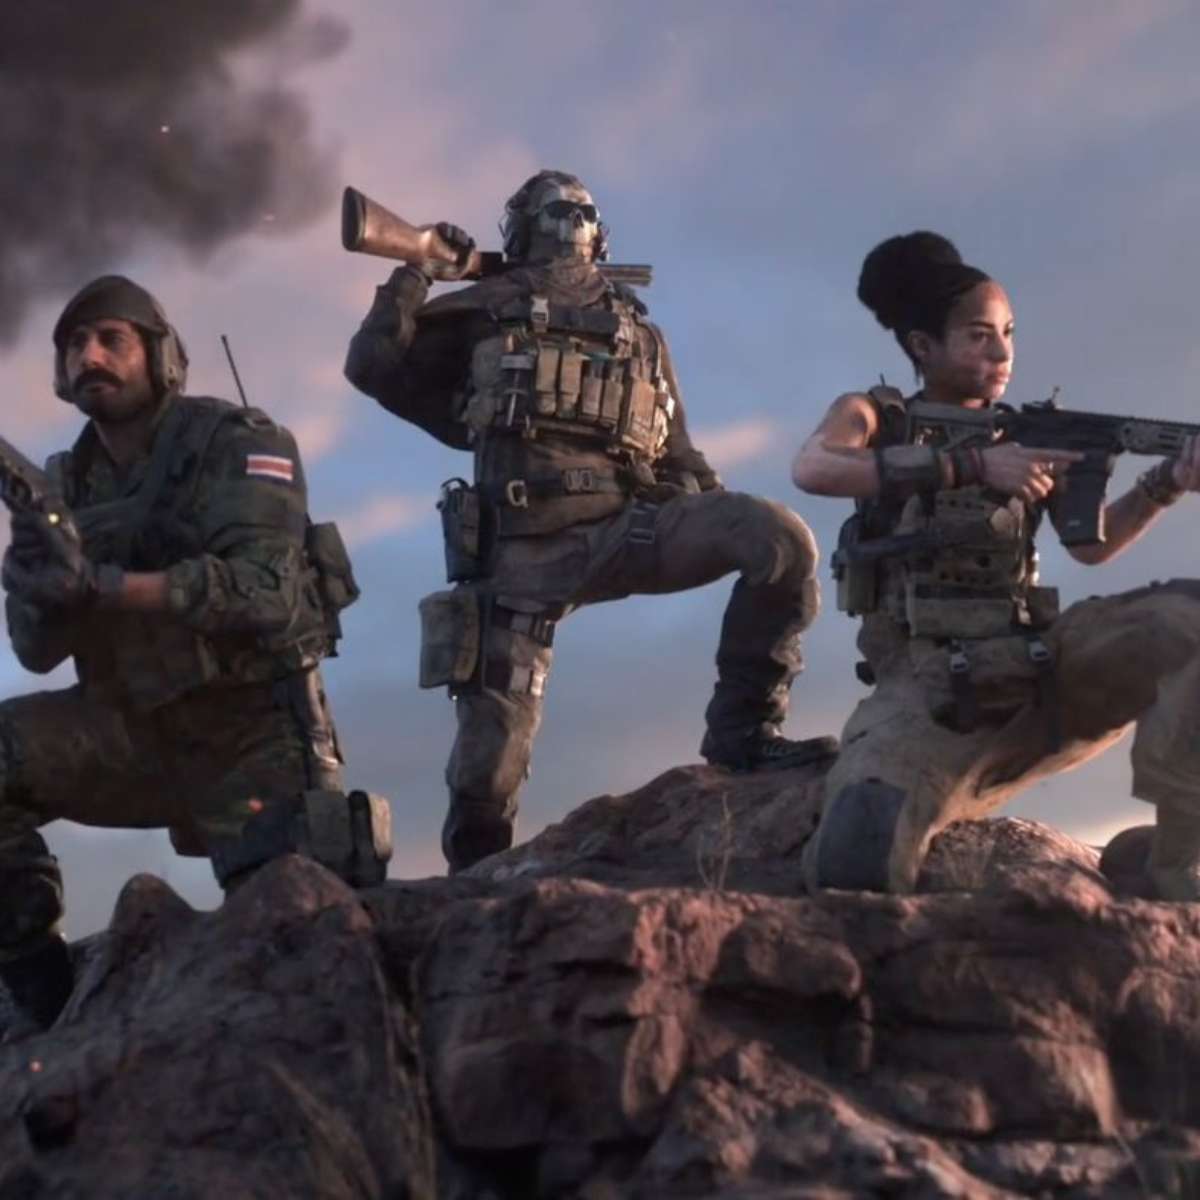 Confira dicas para vencer no jogo Call of Duty Mobile - Canaltech